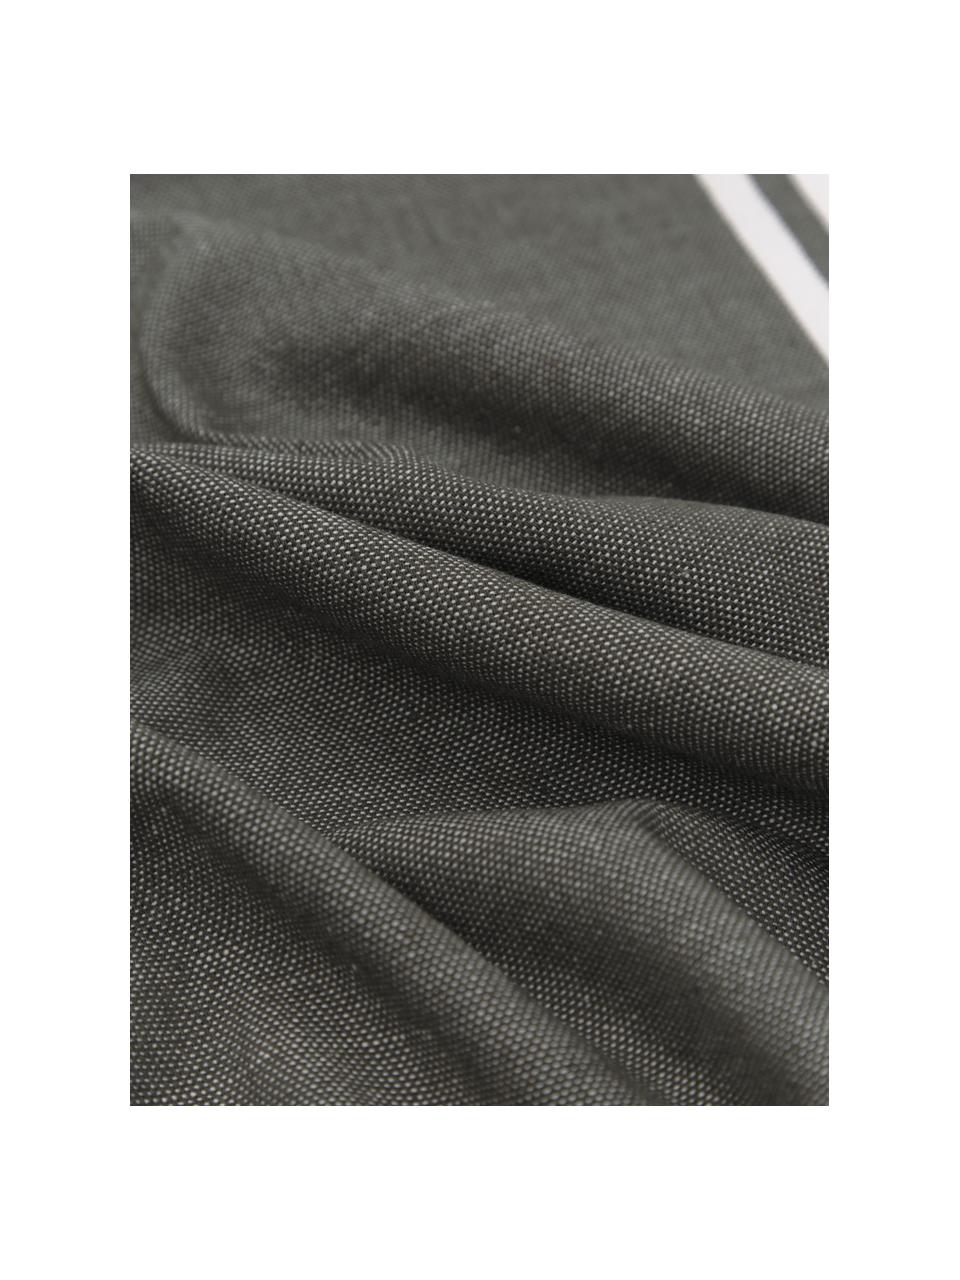 Hamamtuch St Tropez mit Streifen und Fransen, 100% Baumwolle, Dunkelgrün, Weiß, B 100 x L 200 cm